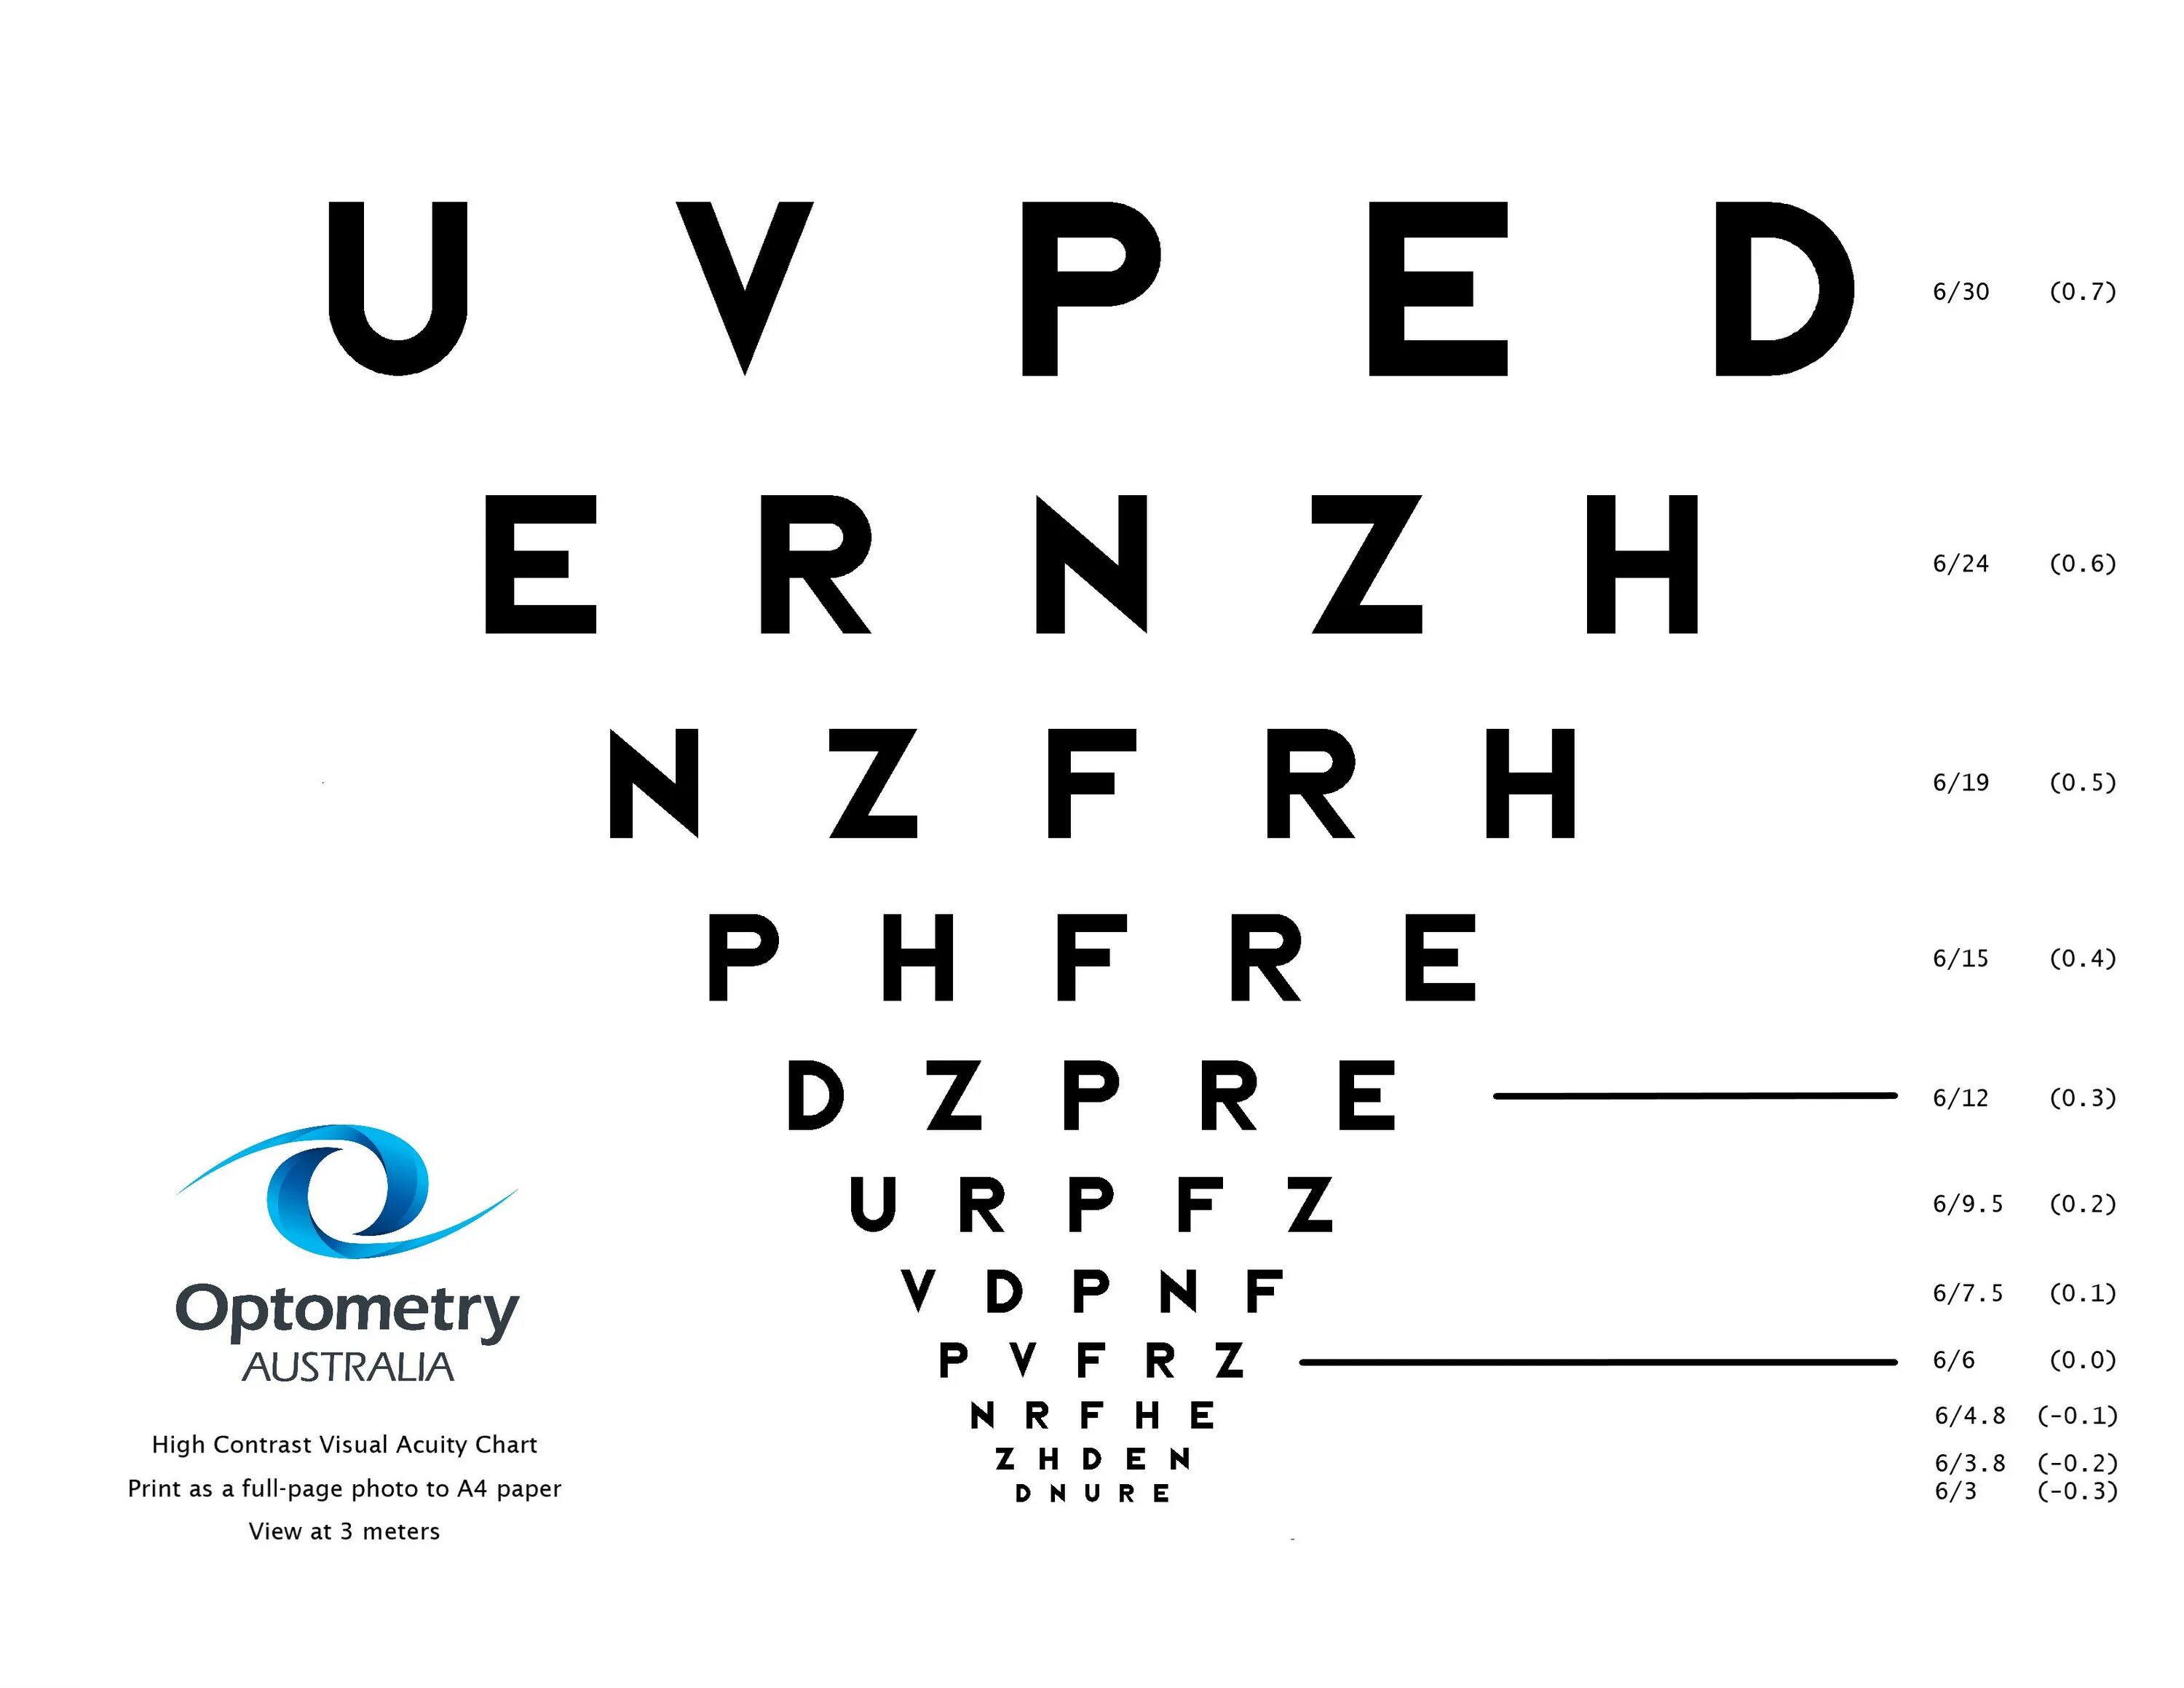 Тест на зрение на телефоне. Шкала зрения. Таблица для проверки зрения. Буквы для зрения. Тест на зрение.